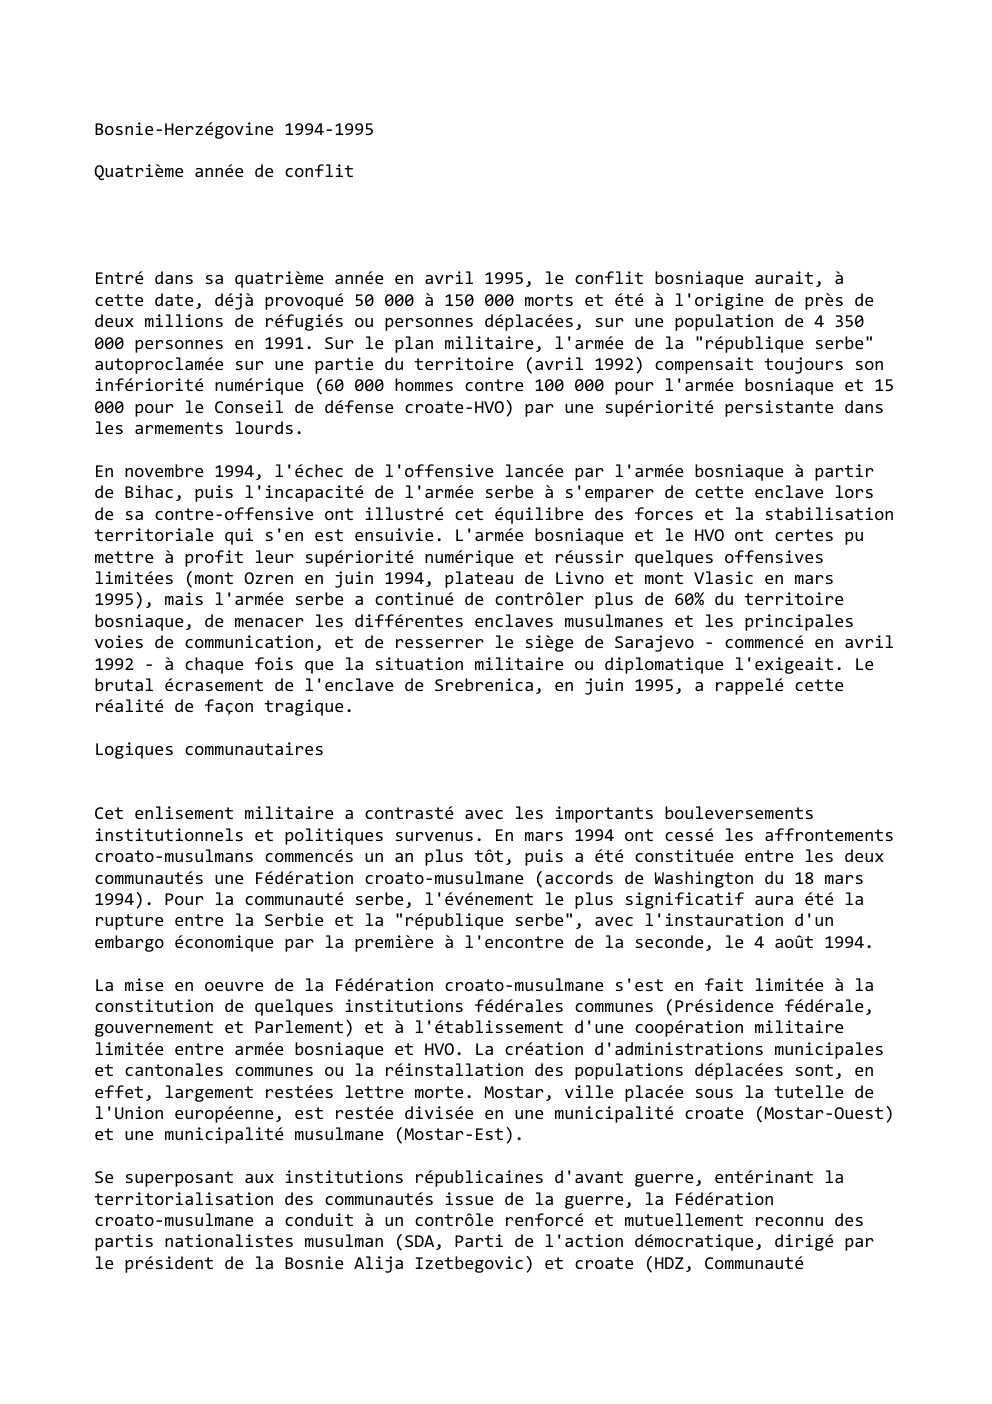 Prévisualisation du document Bosnie-Herzégovine 1994-1995
Quatrième année de conflit

Entré dans sa quatrième année en avril 1995, le conflit bosniaque aurait, à
cette...